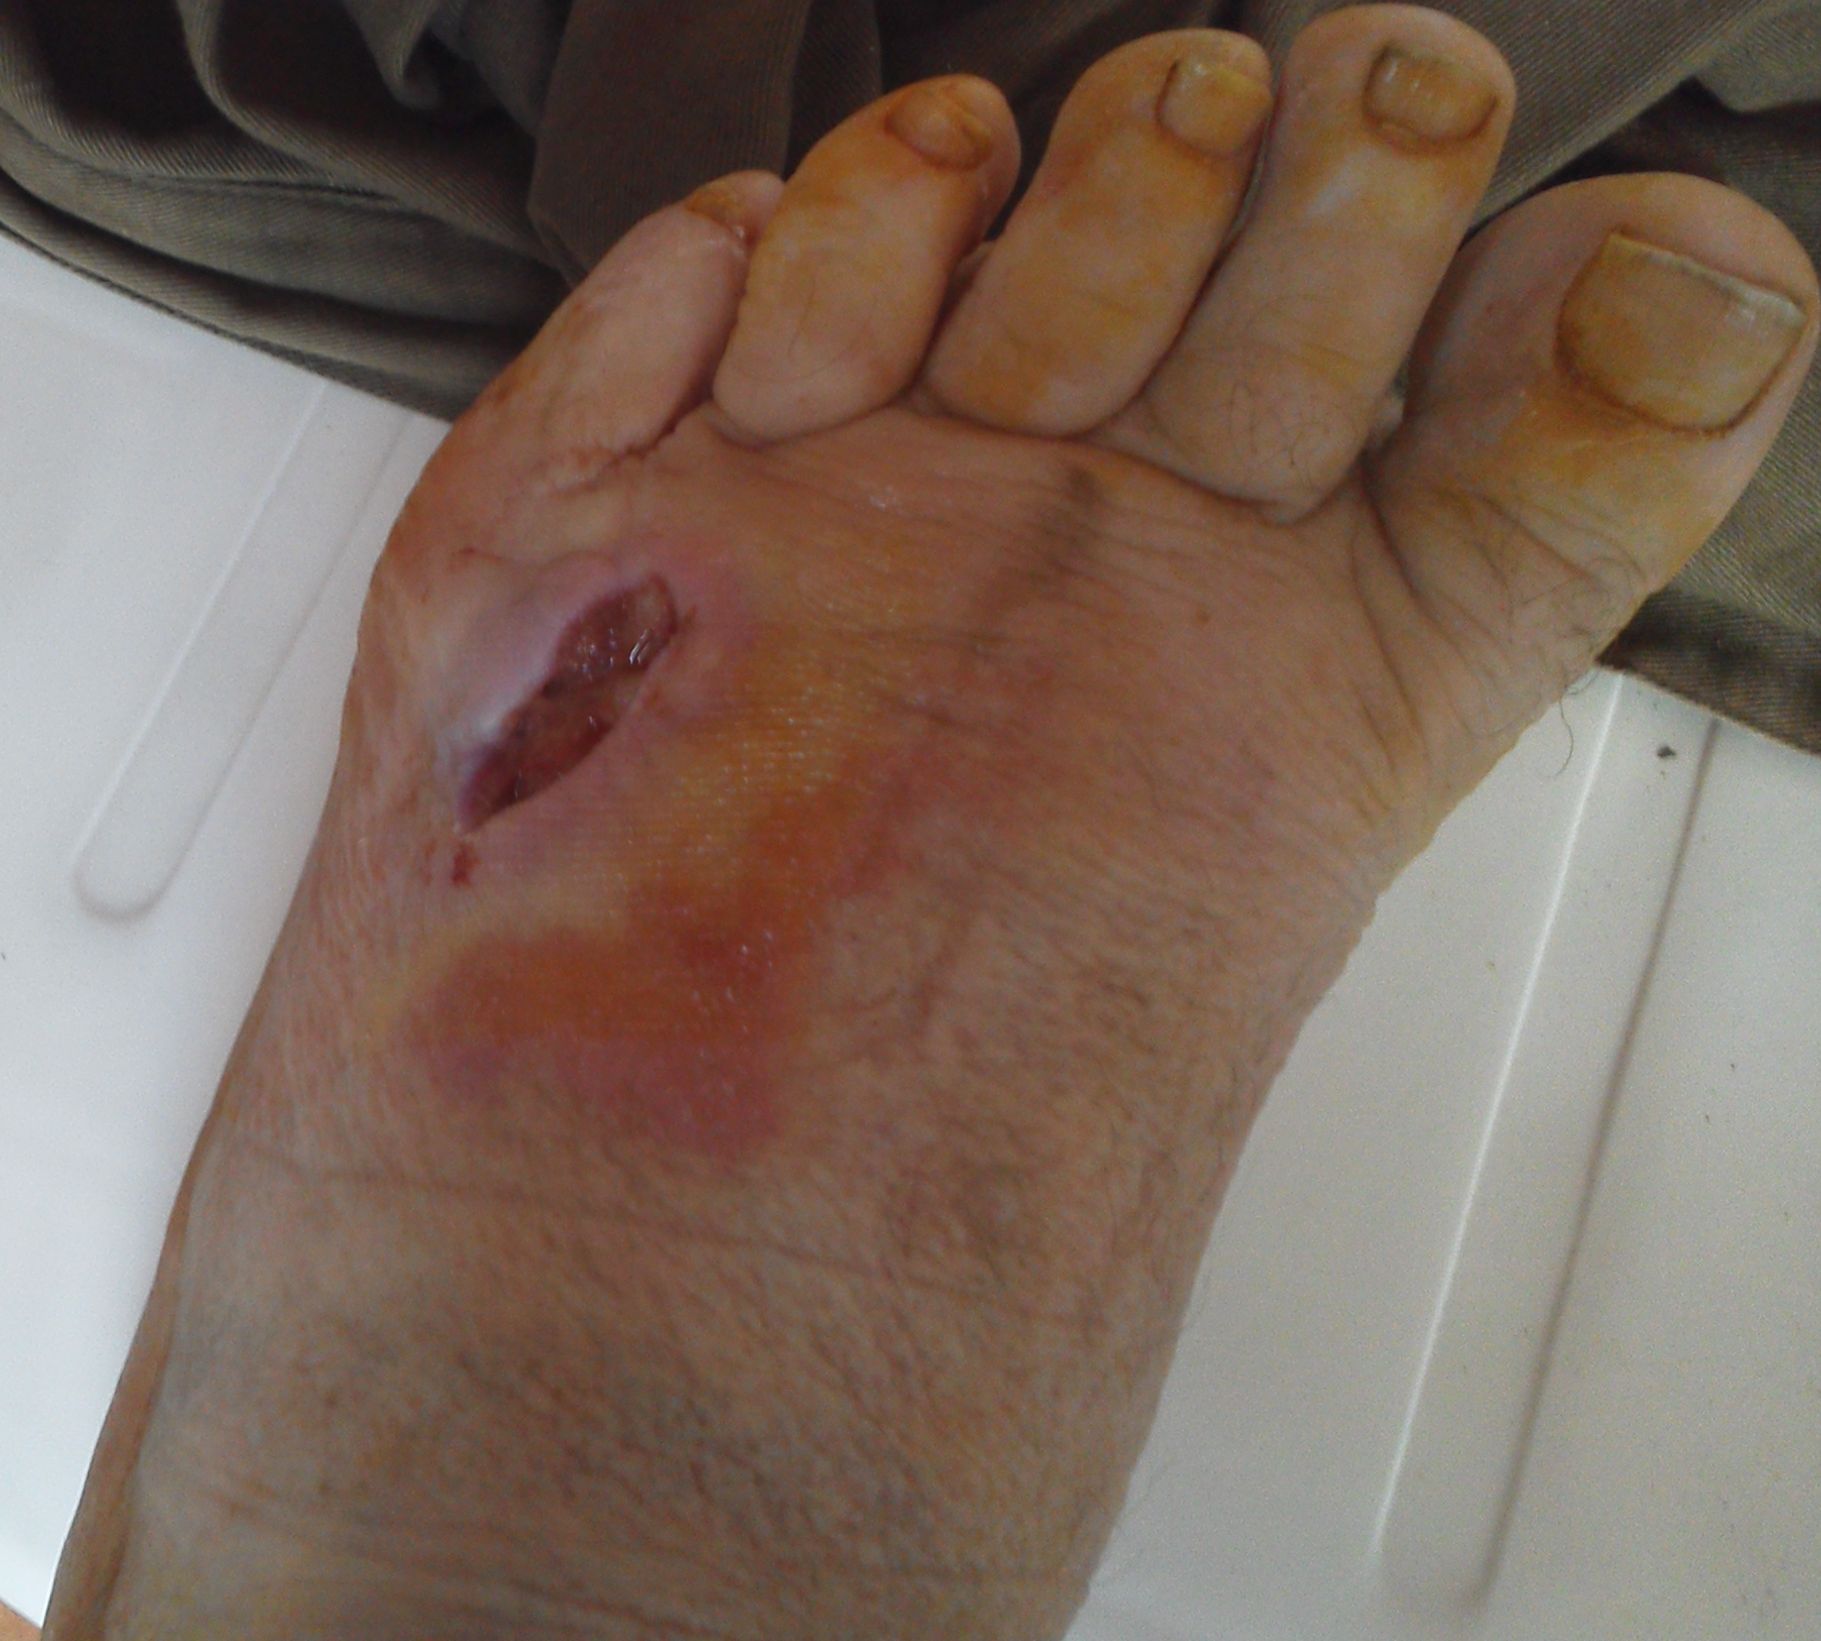 kens foot 31 august 2014 4 days after op.jpg